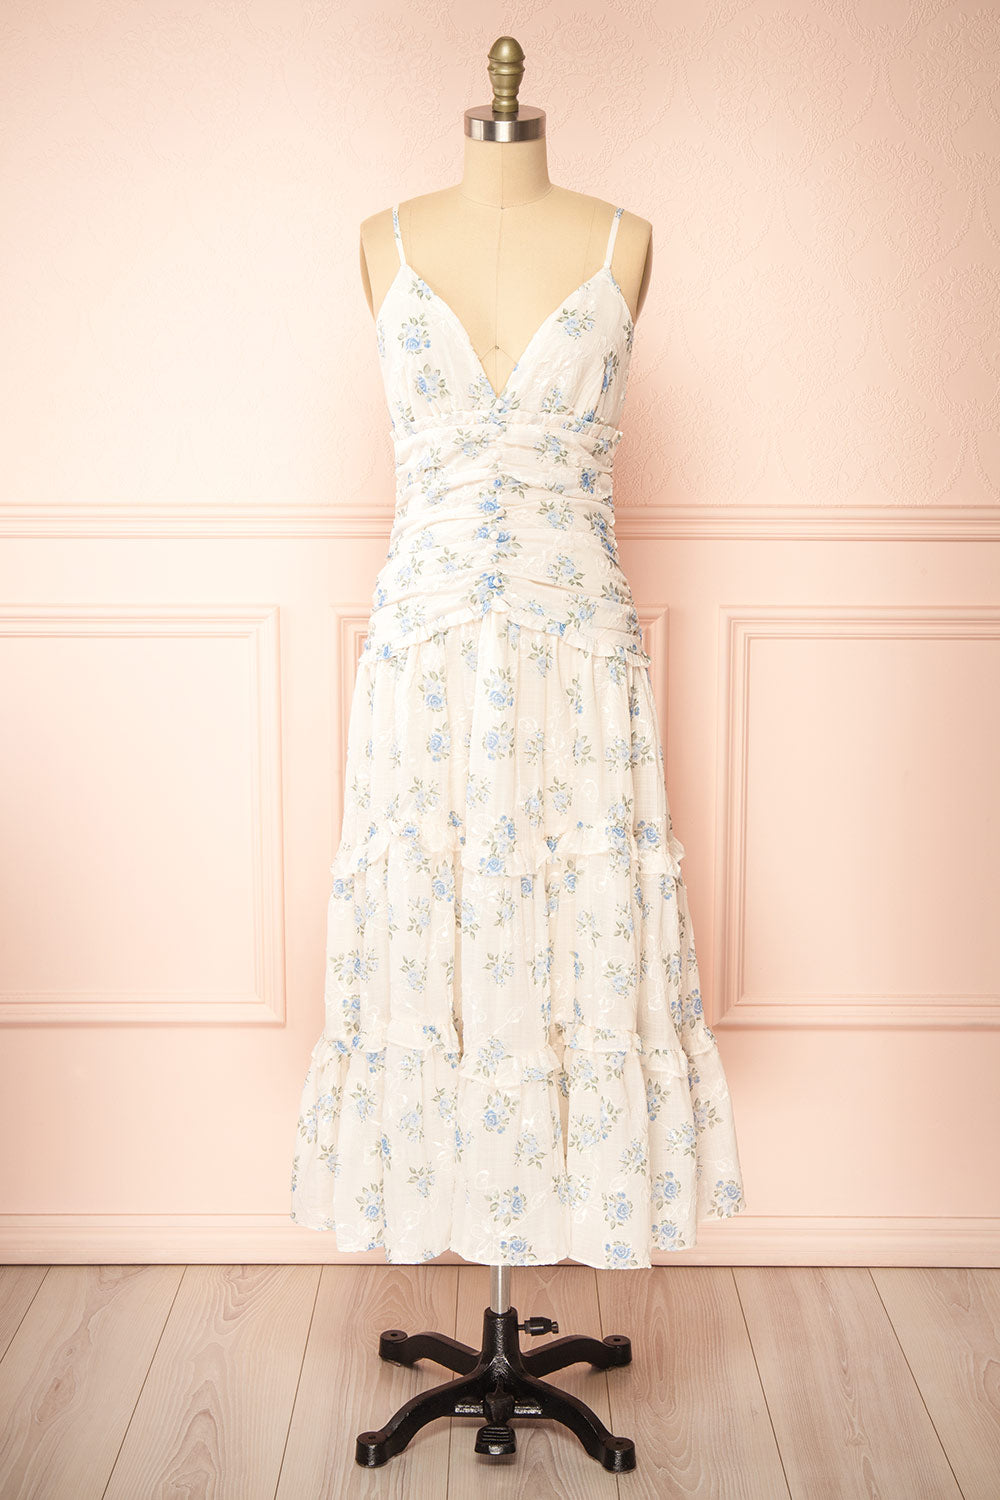 Ursula Long White Dress w/ Vintage Floral Motif | Boutique 1861 front view